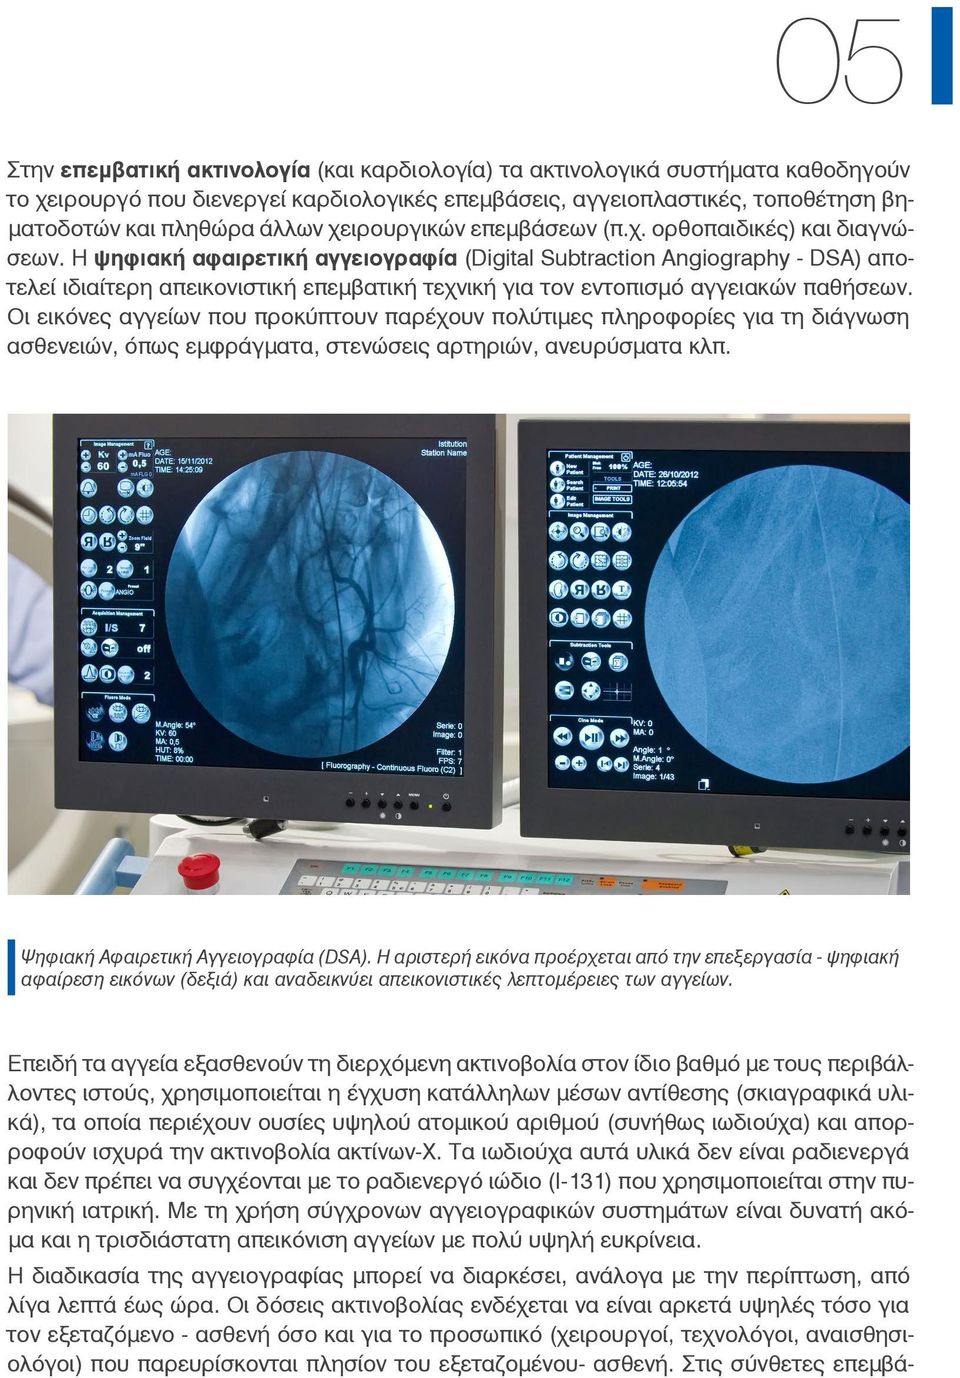 Η ψηφιακή αφαιρετική αγγειογραφία (Digital Subtraction Angiography - DSA) αποτελεί ιδιαίτερη απεικονιστική επεμβατική τεχνική για τον εντοπισμό αγγειακών παθήσεων.